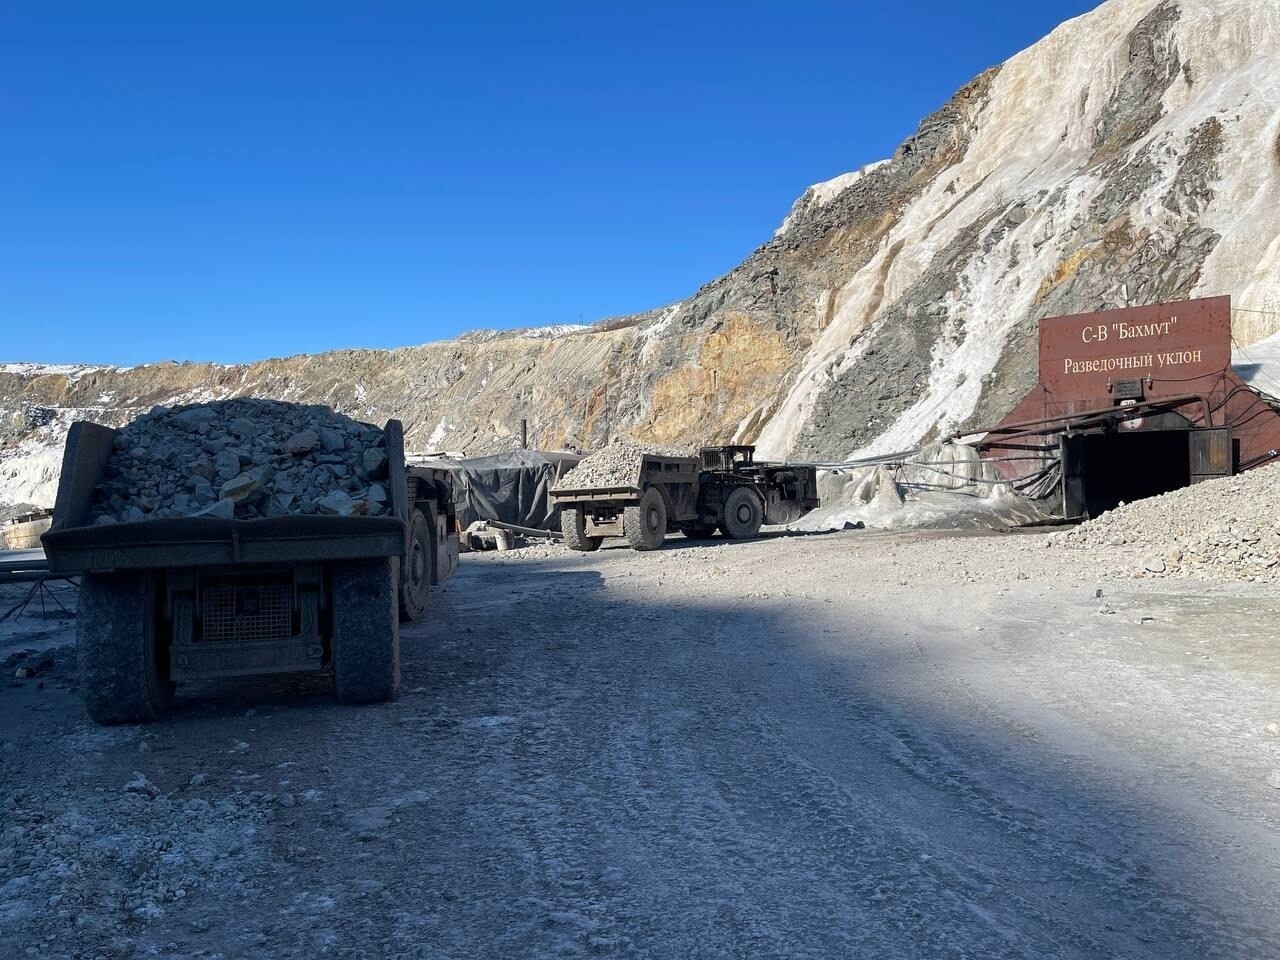 Горноспасатели начали поисково-спасательную операцию на руднике в Приамурье - МЧС РФ